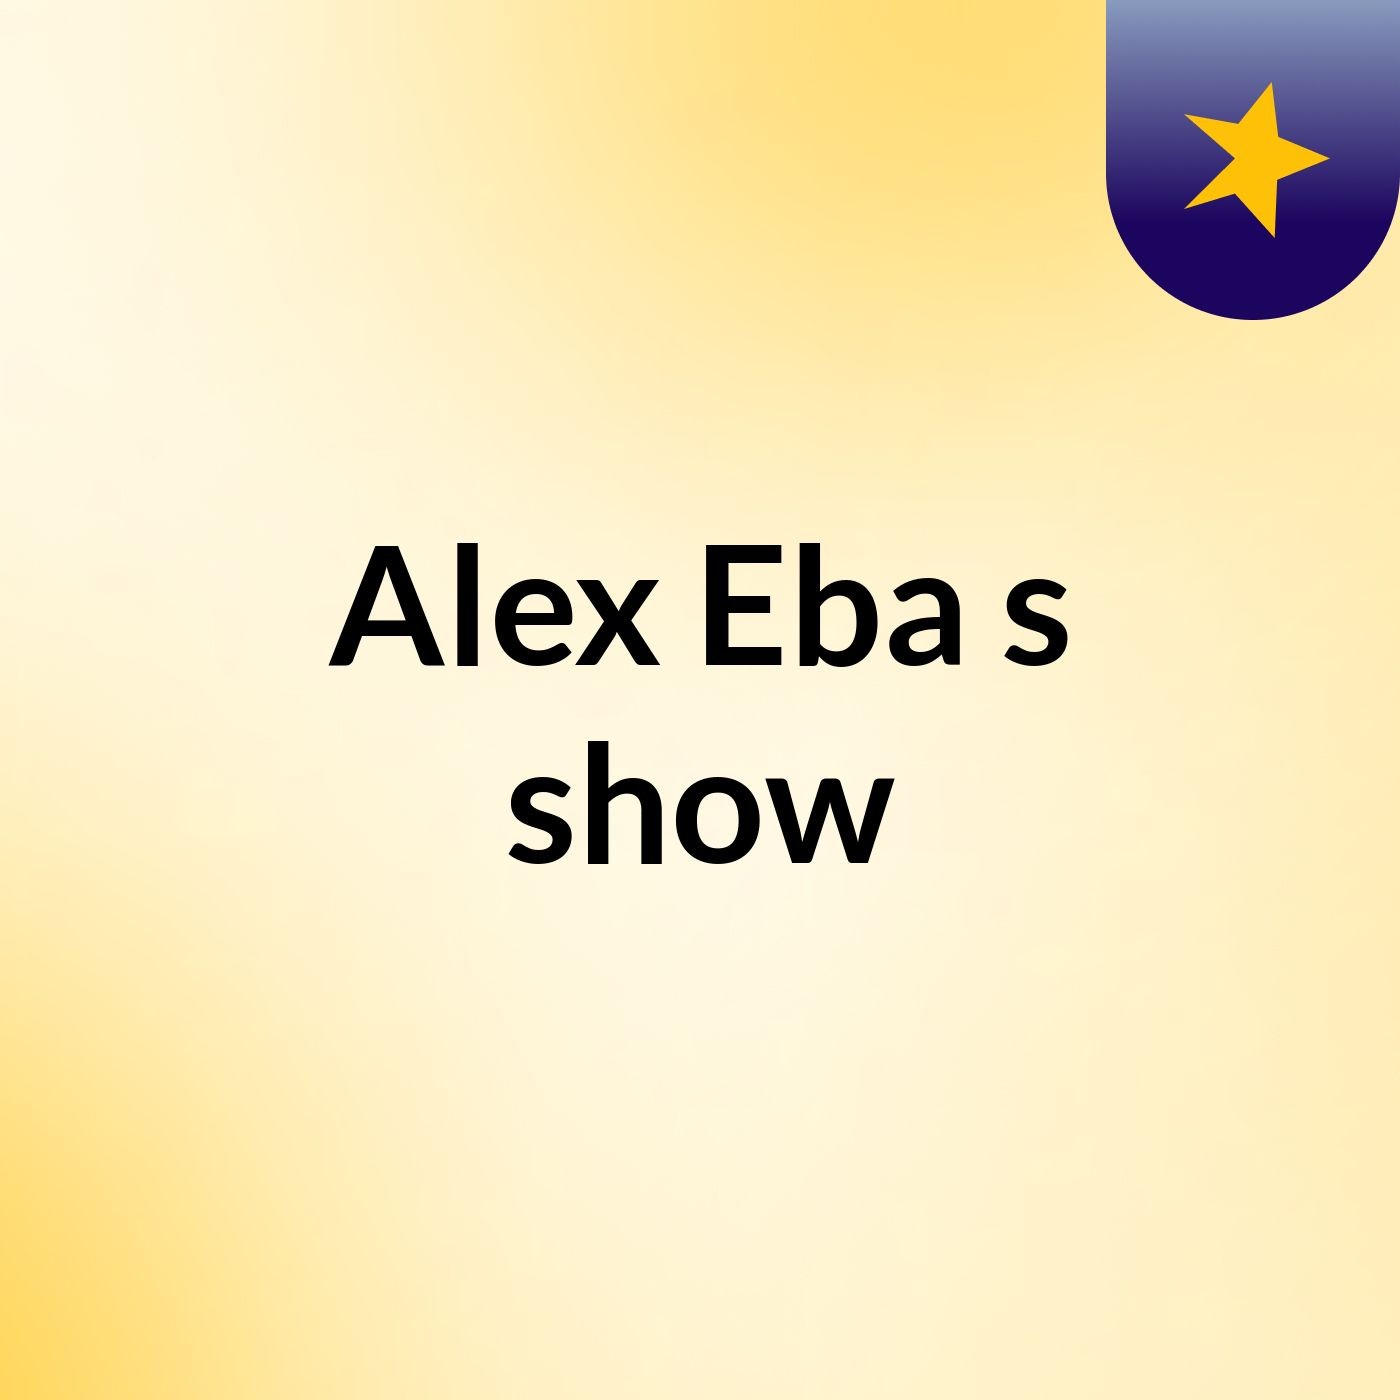 Alex Eba's show